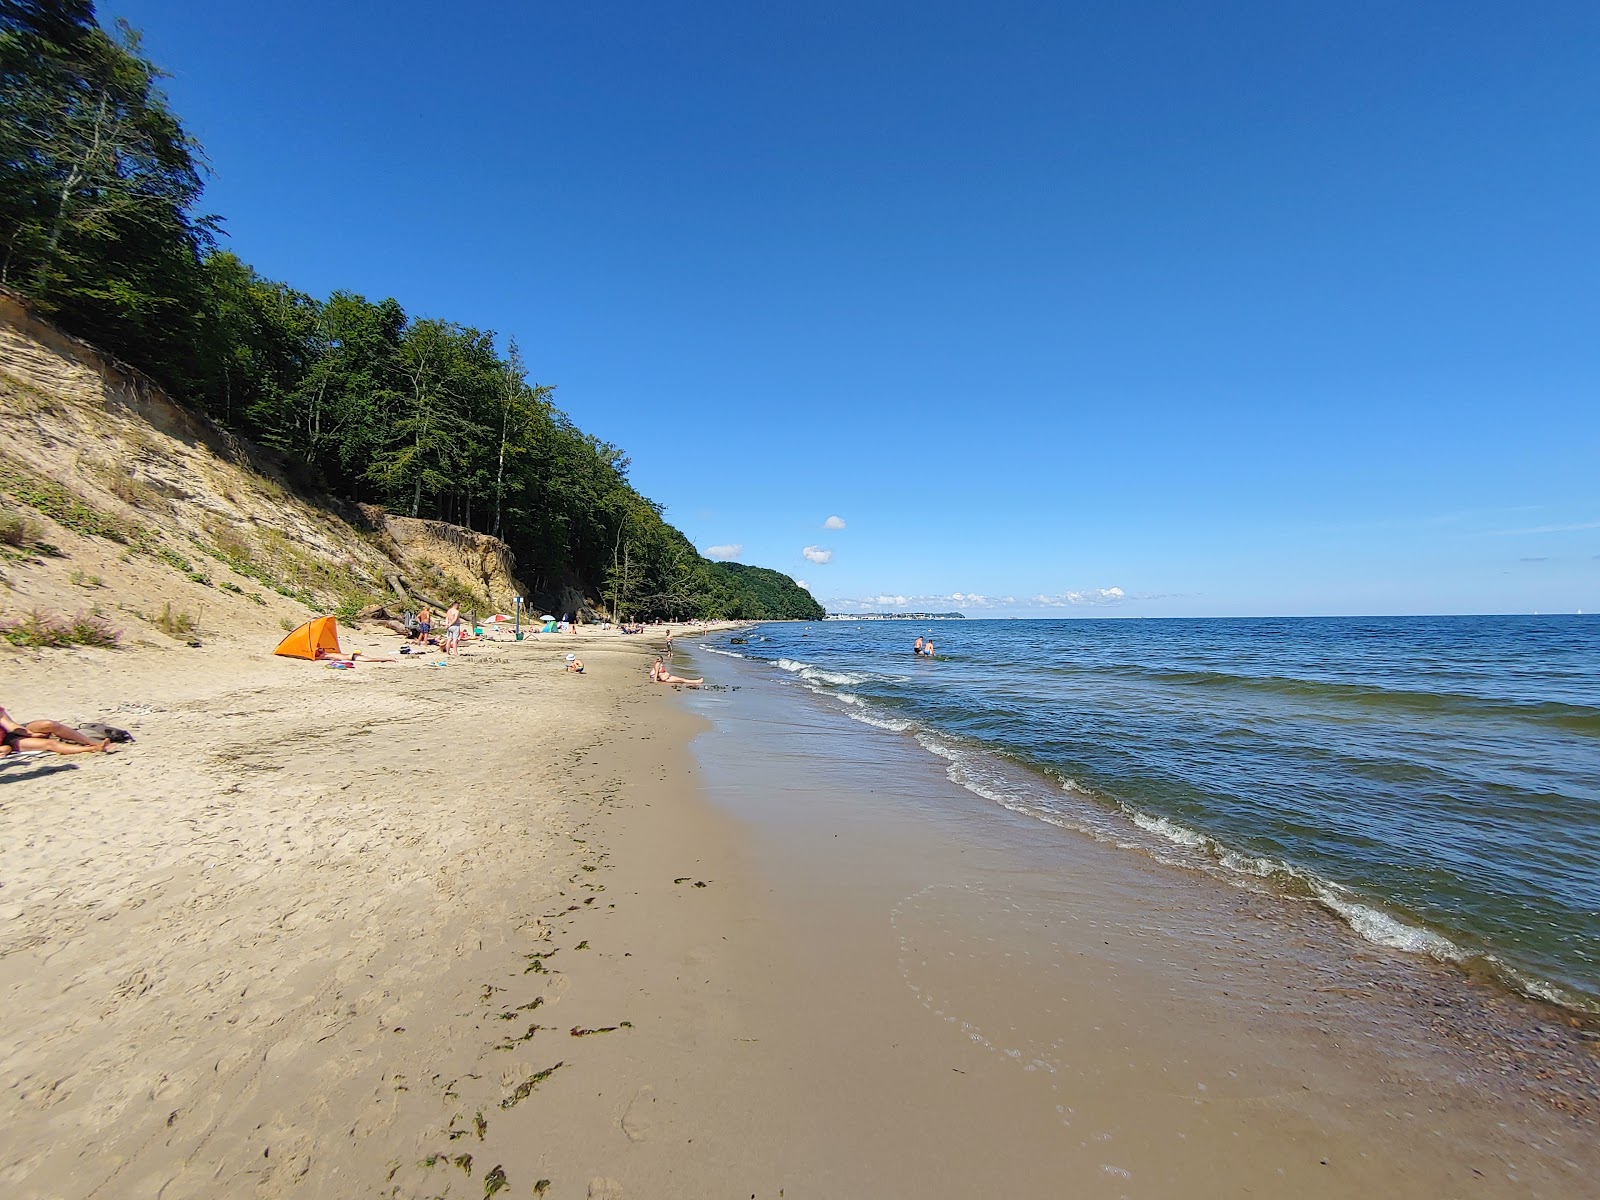 Redlowska Beach'in fotoğrafı parlak kum yüzey ile